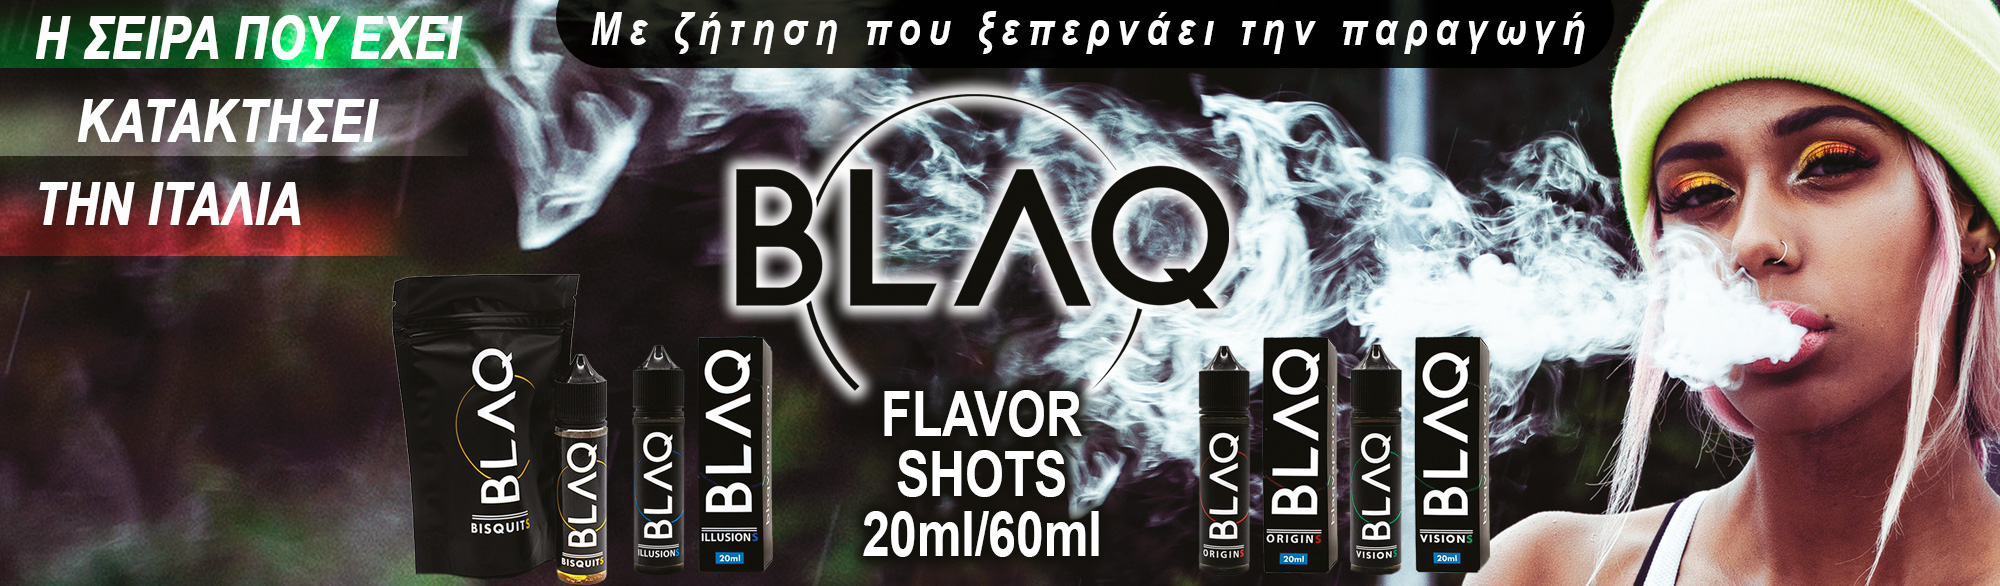 BANNER BLAQ 20ml60ml FlavorShot inner